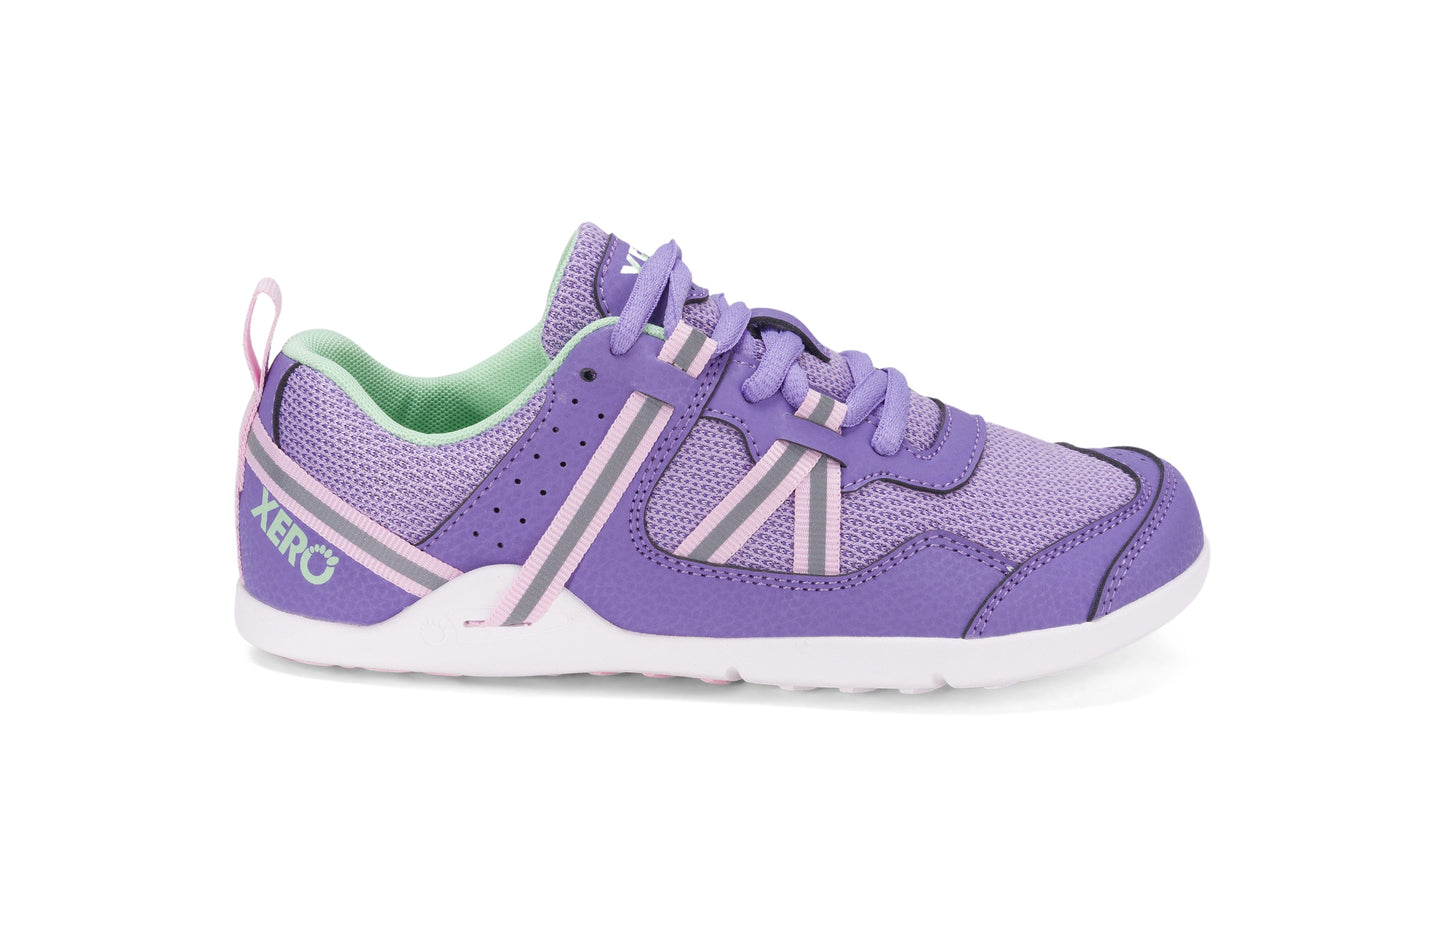 Xero Shoes Prio Kids barfods træningssko/sneakers til børn i farven lilac / pink, yderside